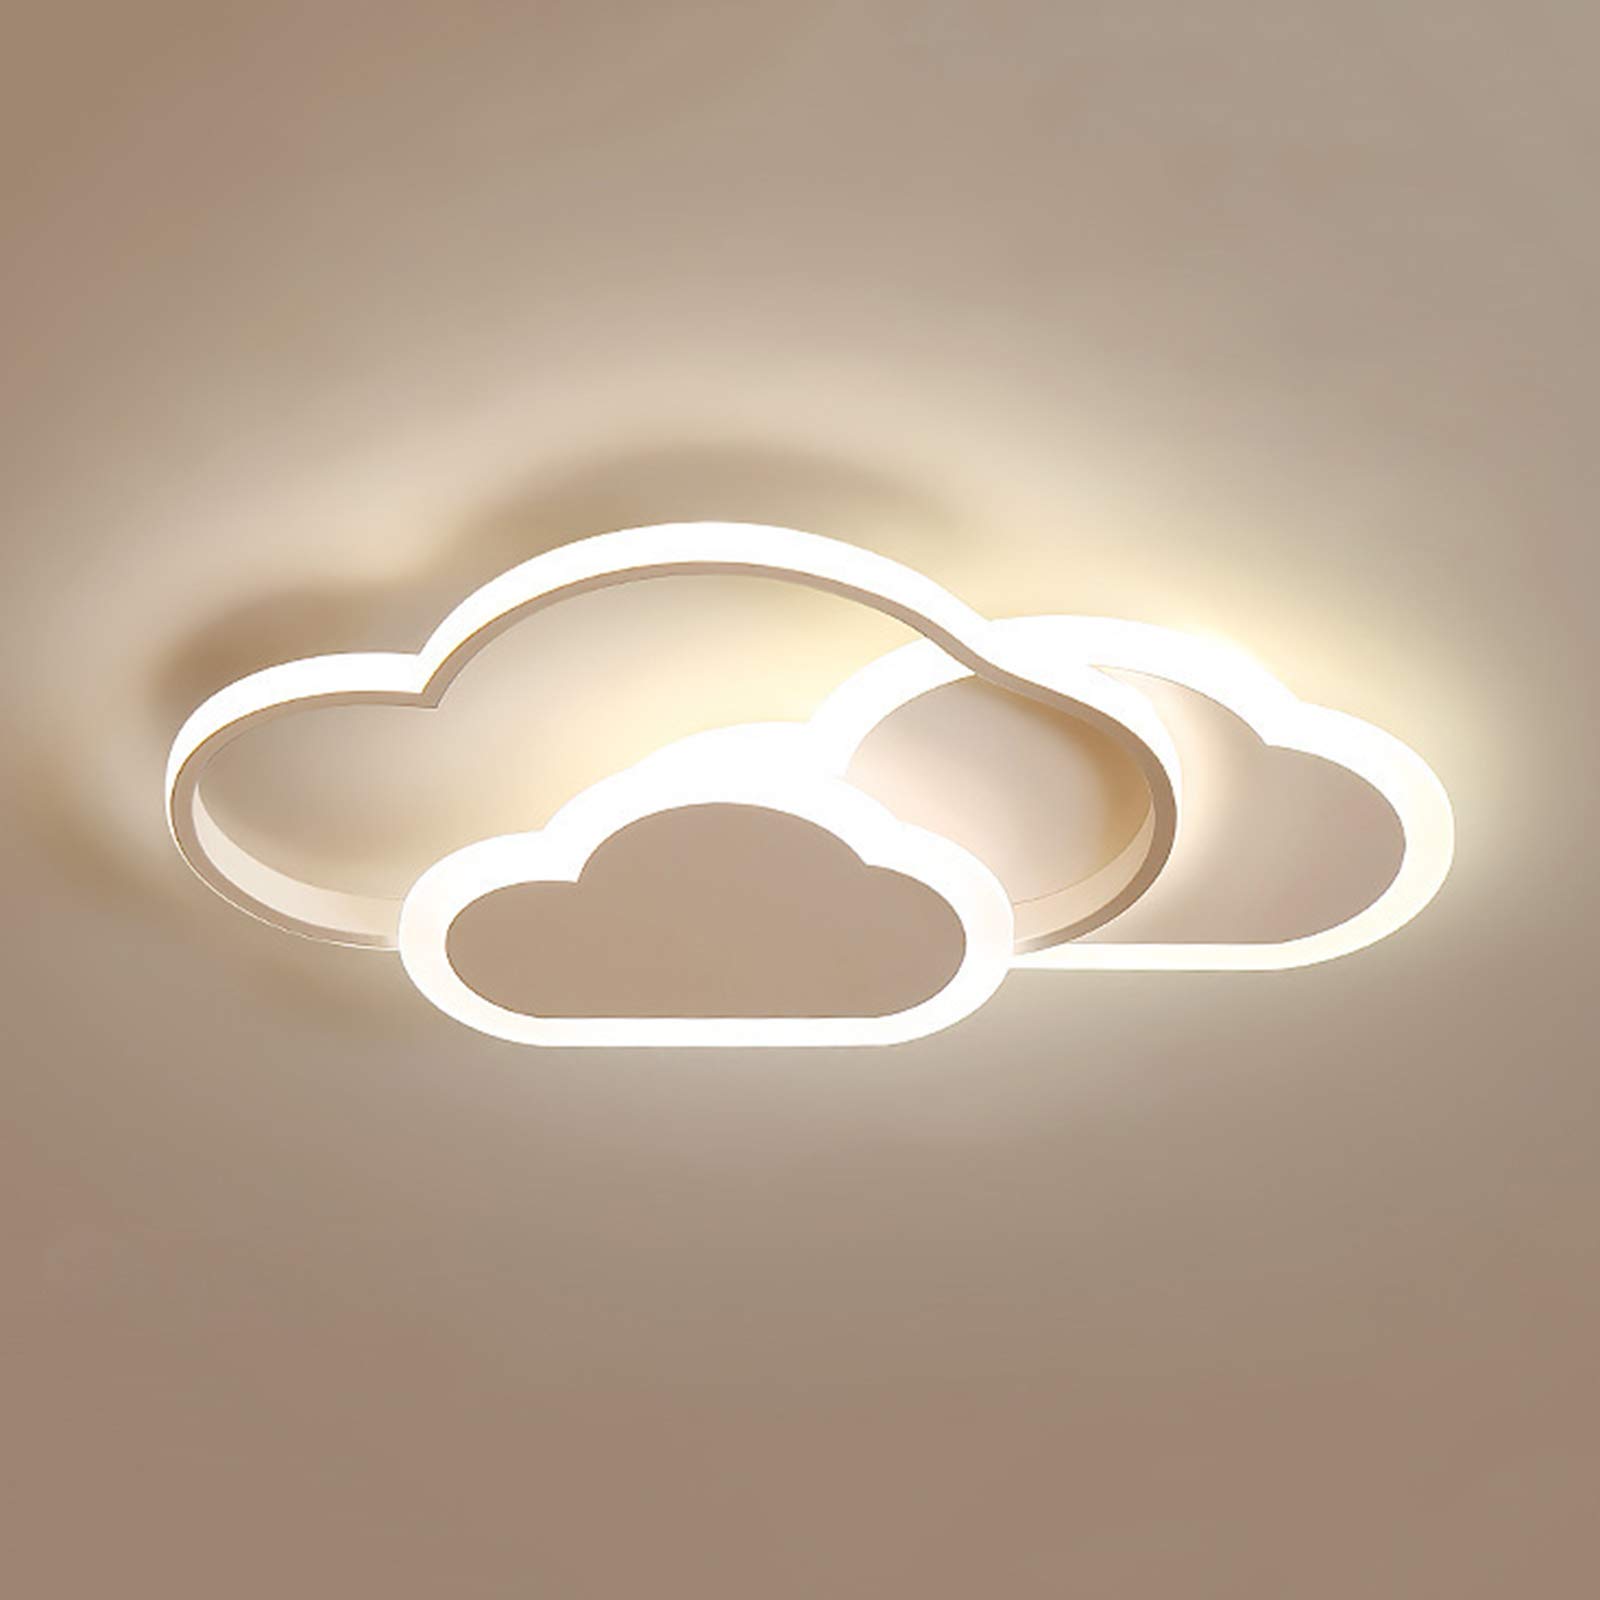 FUROMG Deckenleuchte Kinderzimmerlampe Modern Wolke kreative Schlafzimmer Lampe Licht,LED Deckenleuchte Wolkenform Deckenlampe Wohnzimmer Kinderzimmer Licht